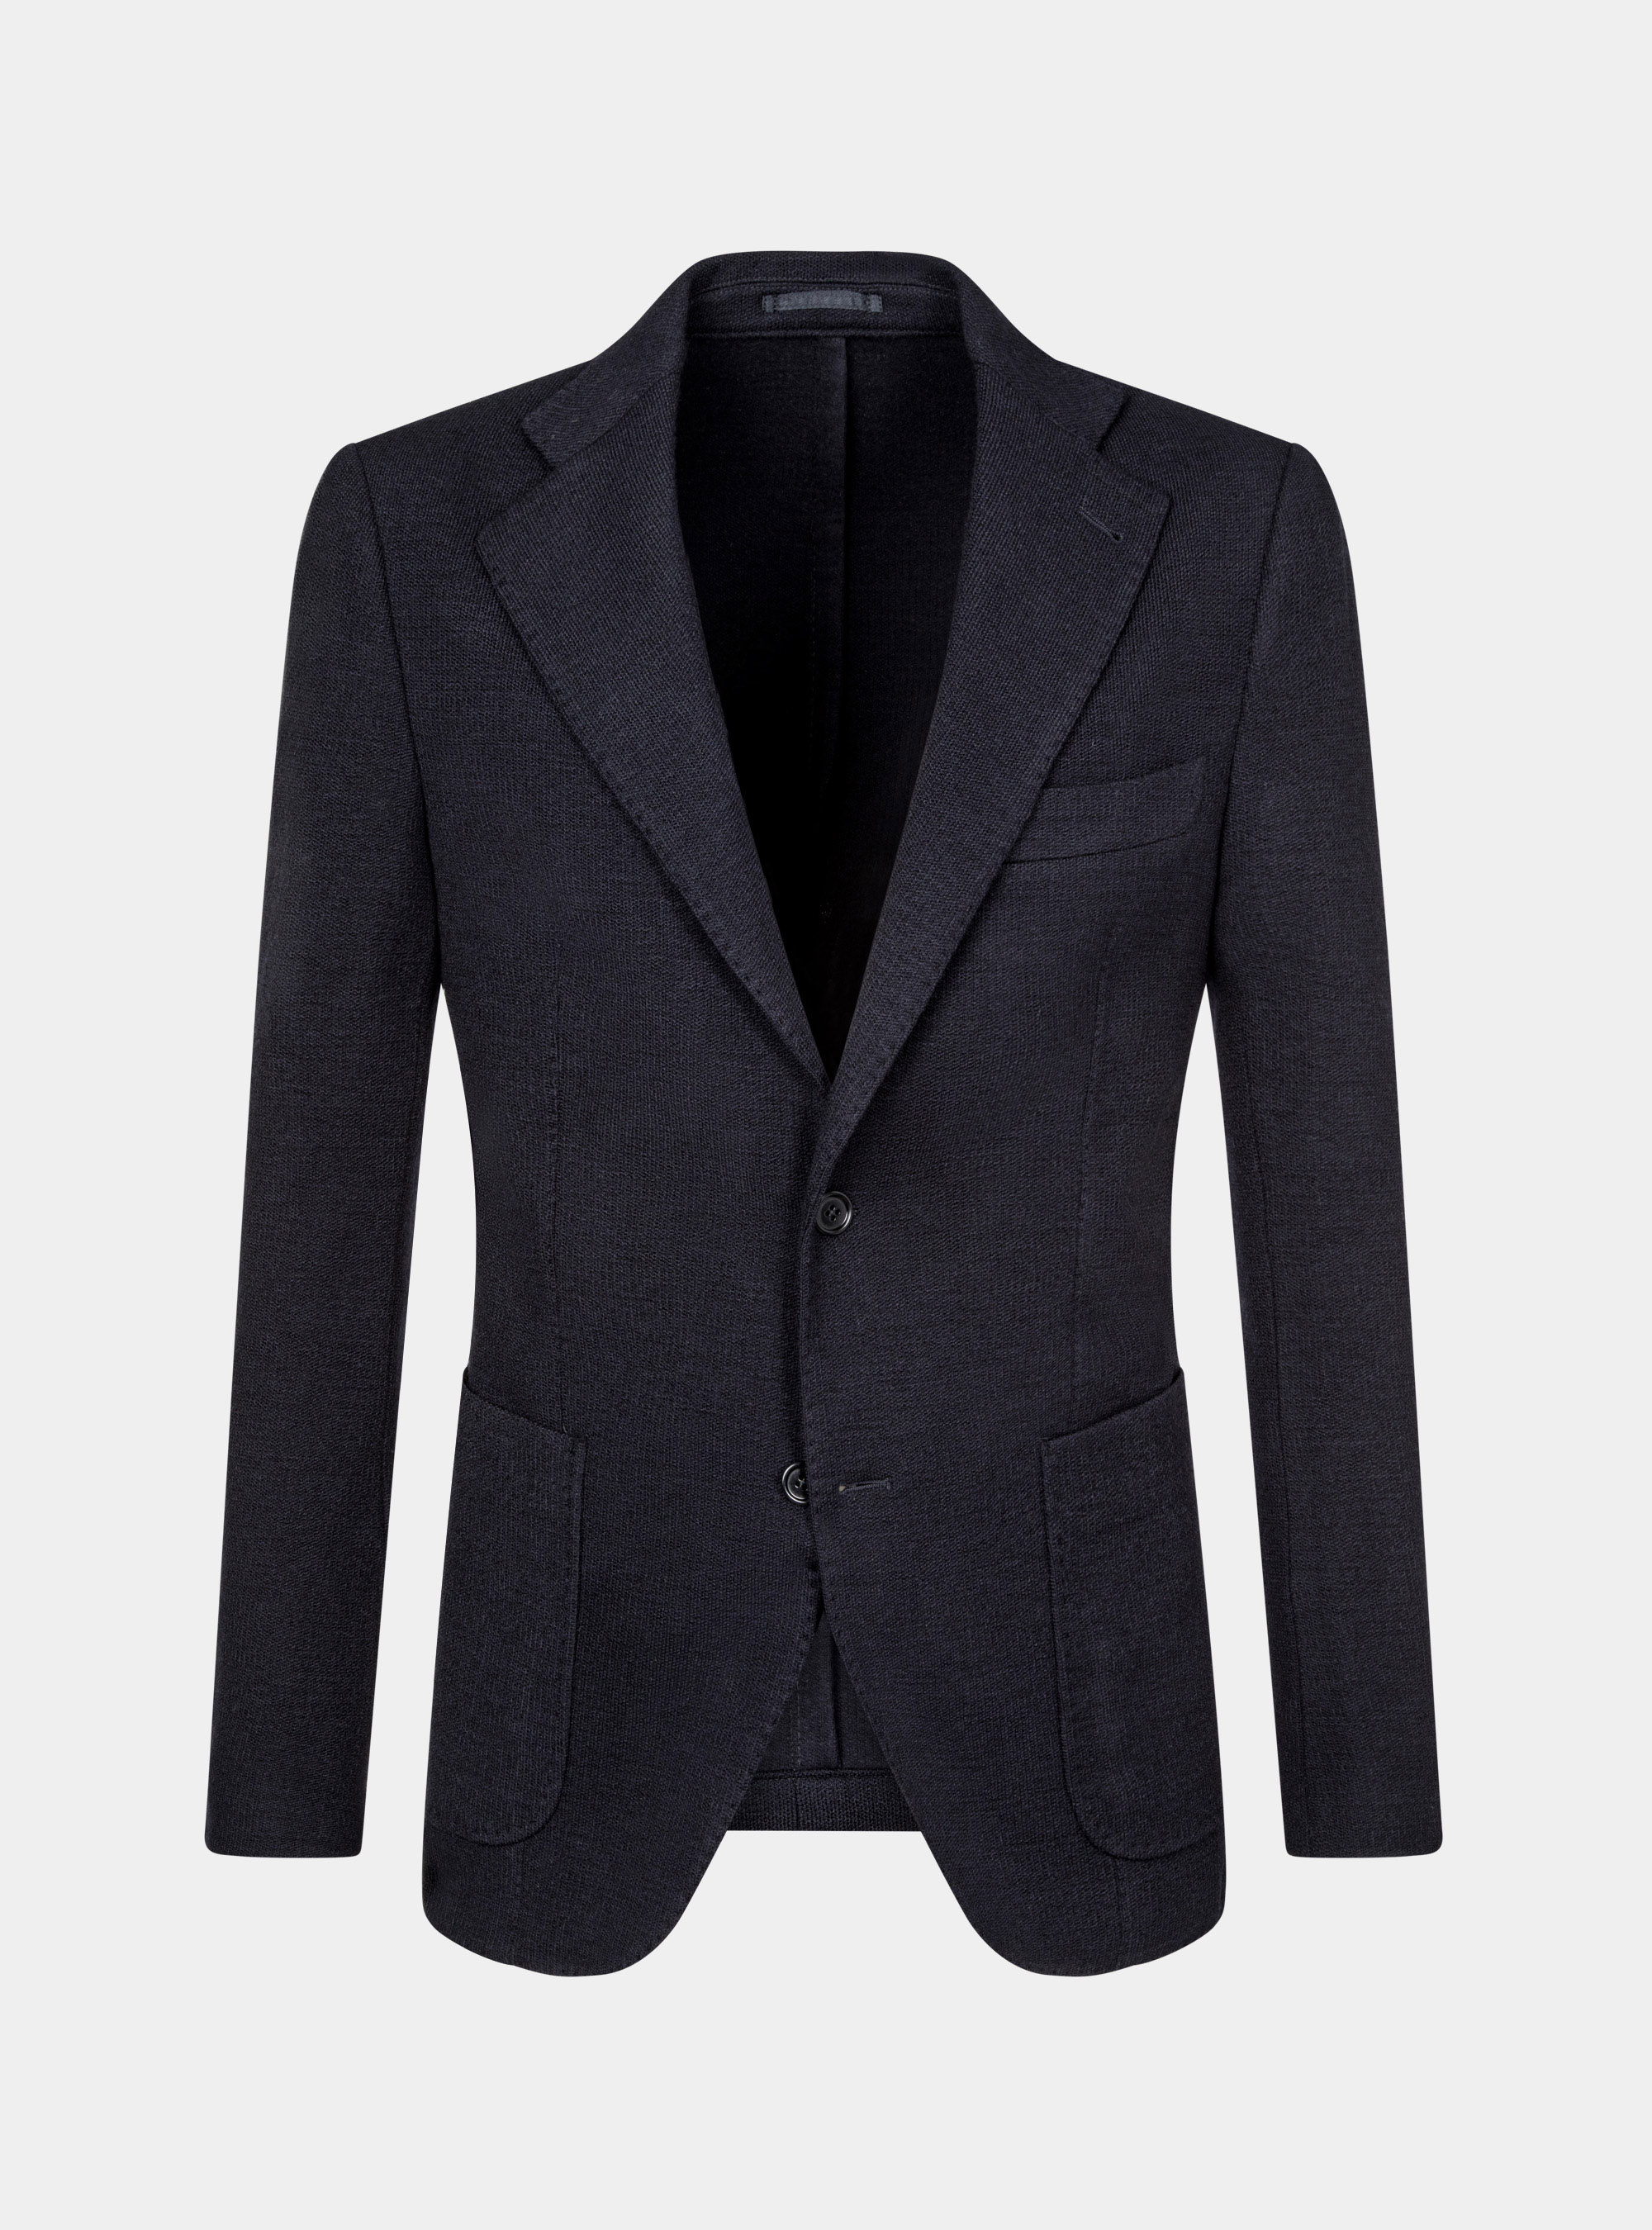 Unlined blazer in wool and cotton jersey | GutteridgeEU | Men's catalog ...